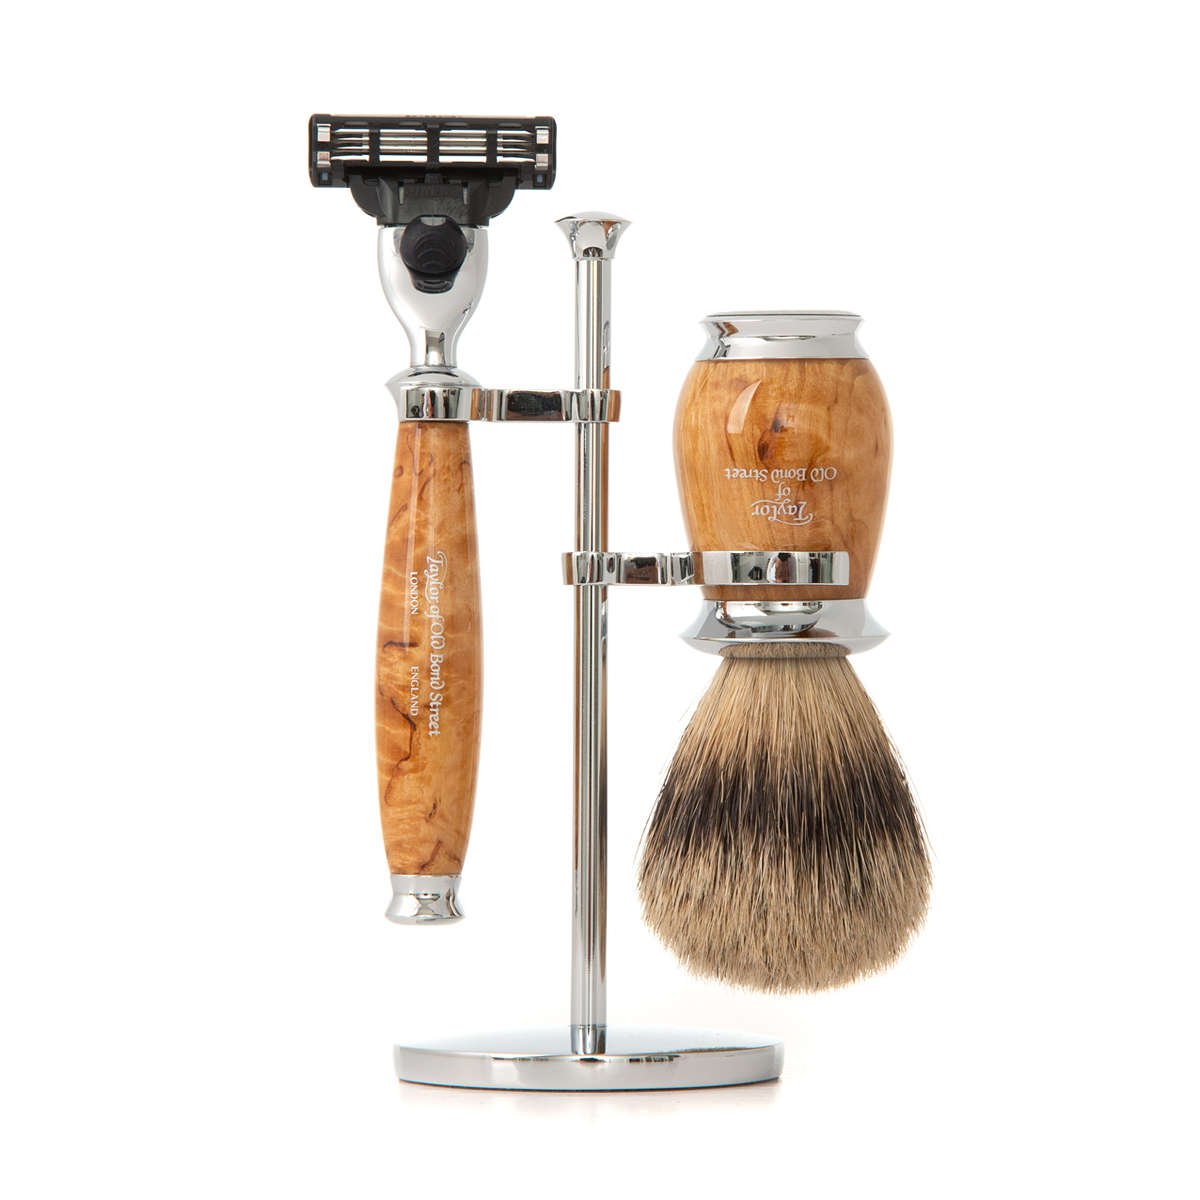 Razor and shaving brush sets, gifts for men